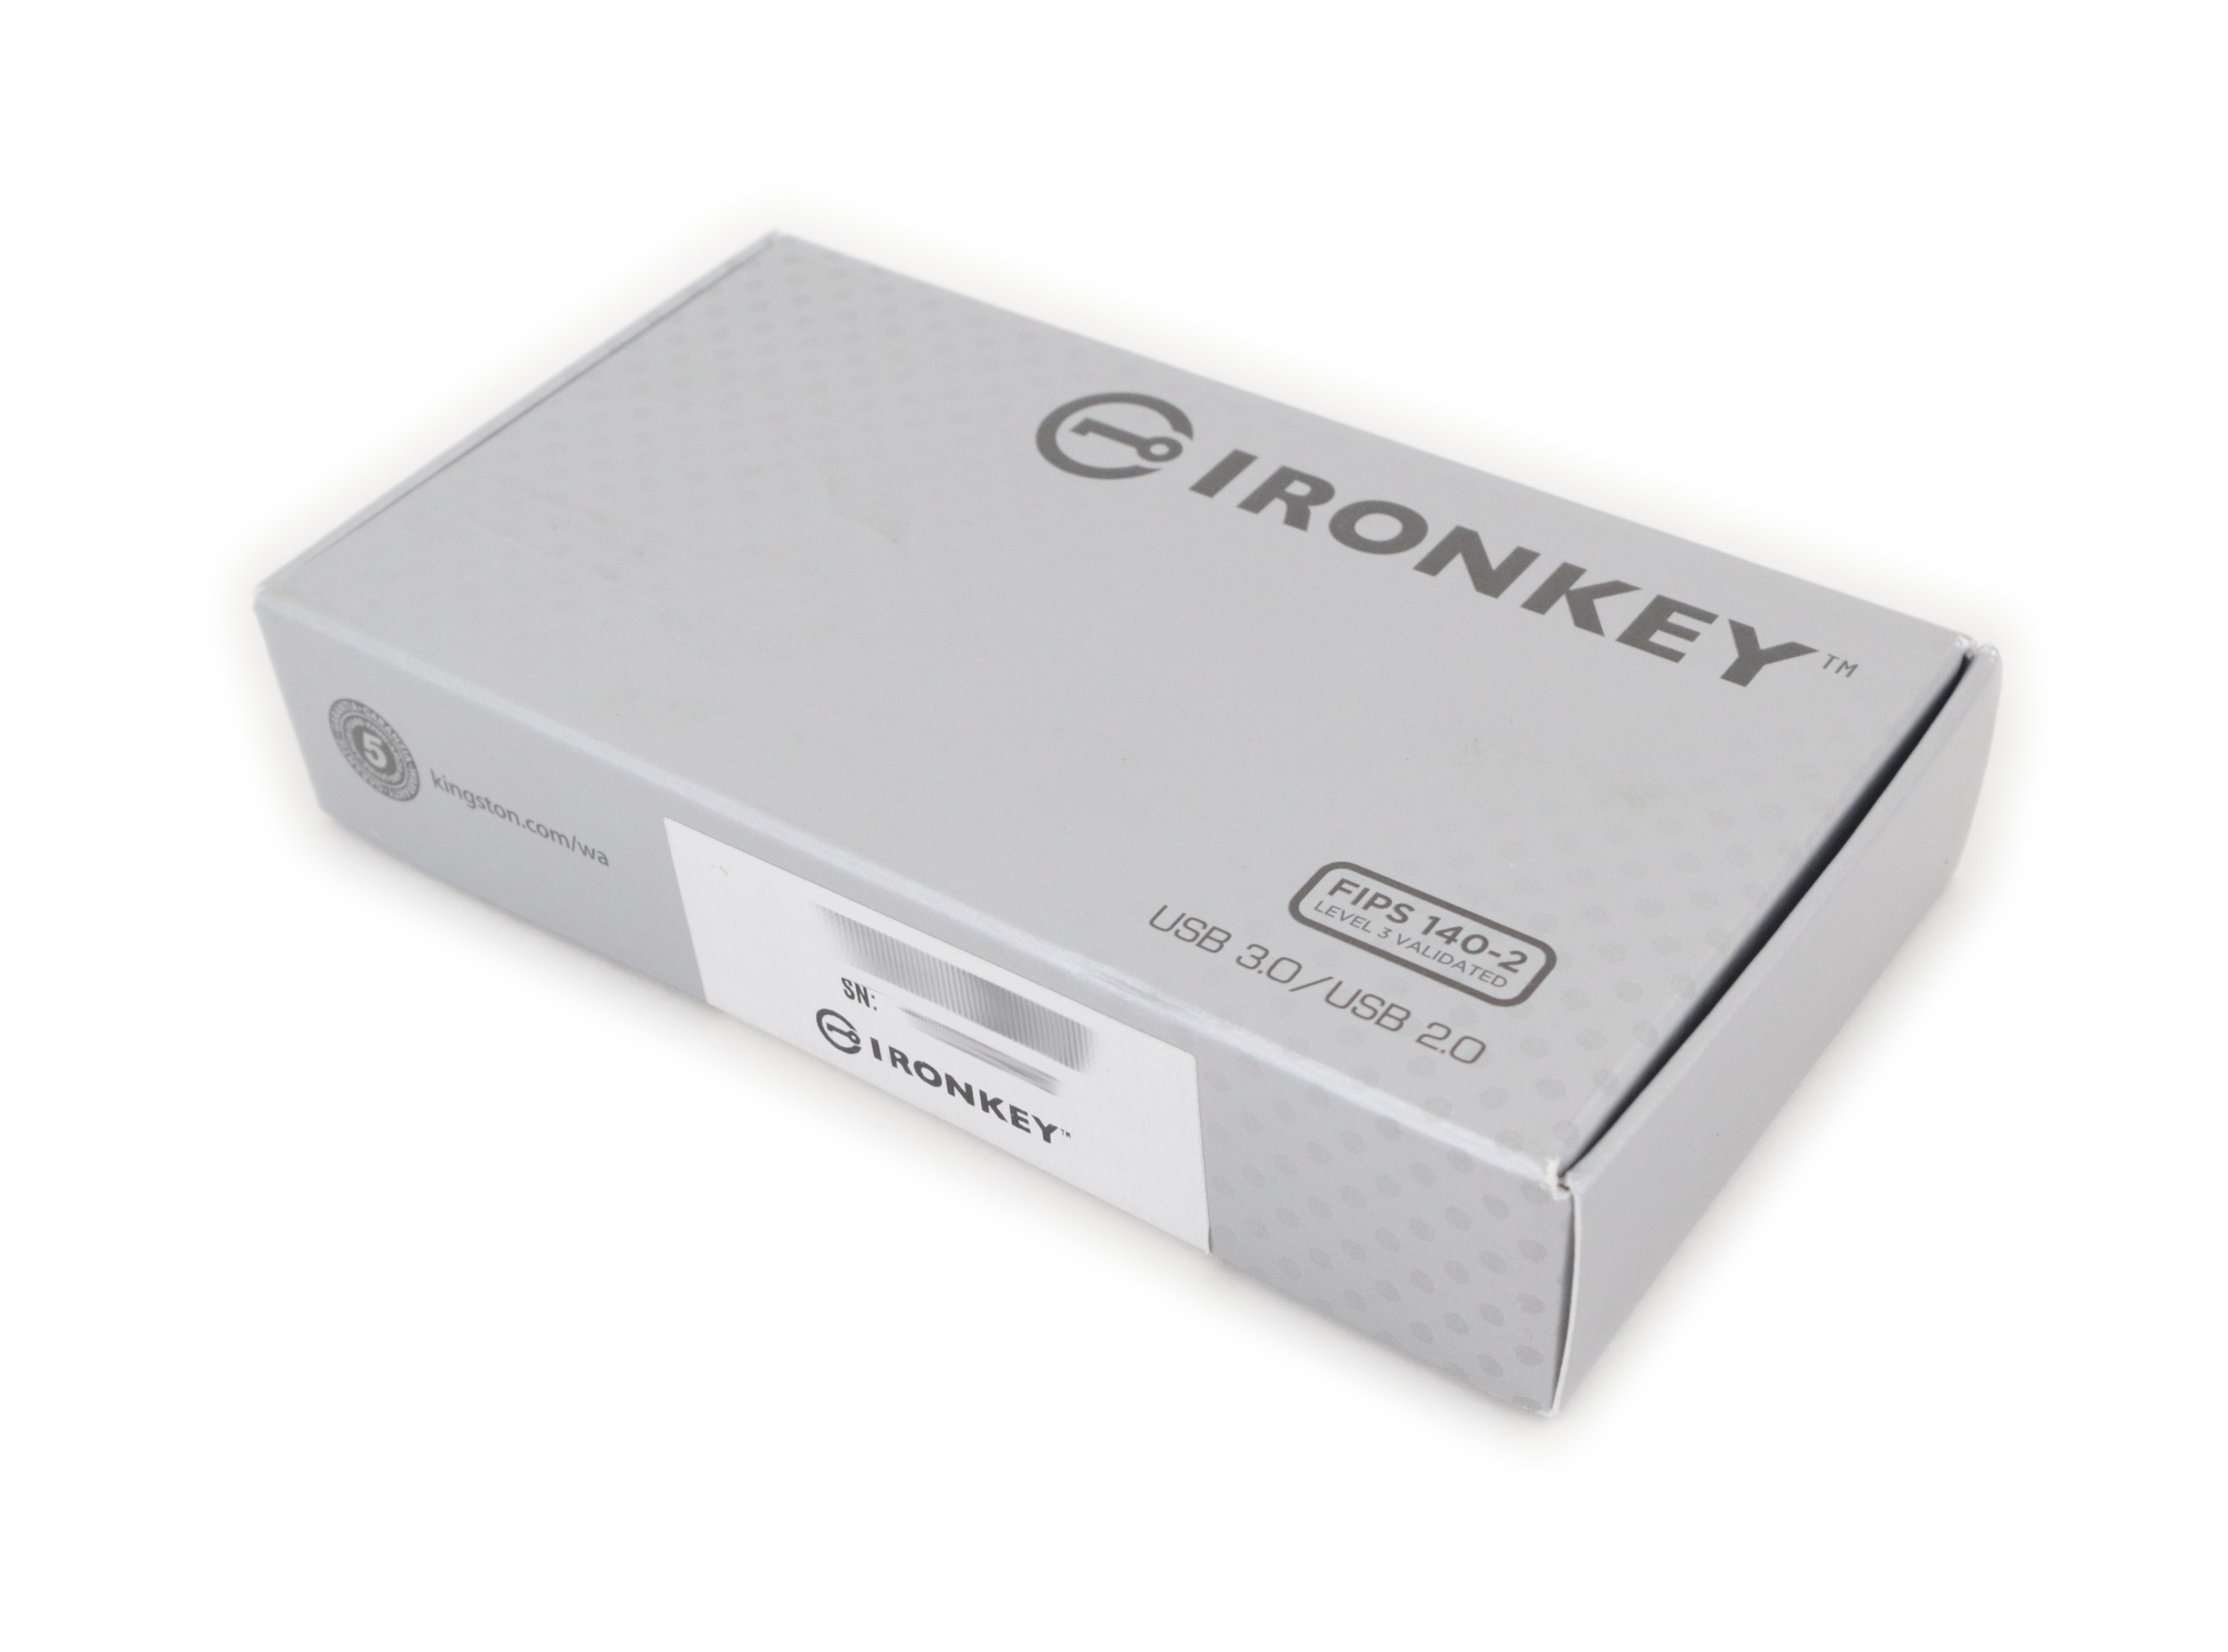 Kingston IronKey D300S Managed USB flash drive 8GB TAA Compliant IKD300SM/8GB